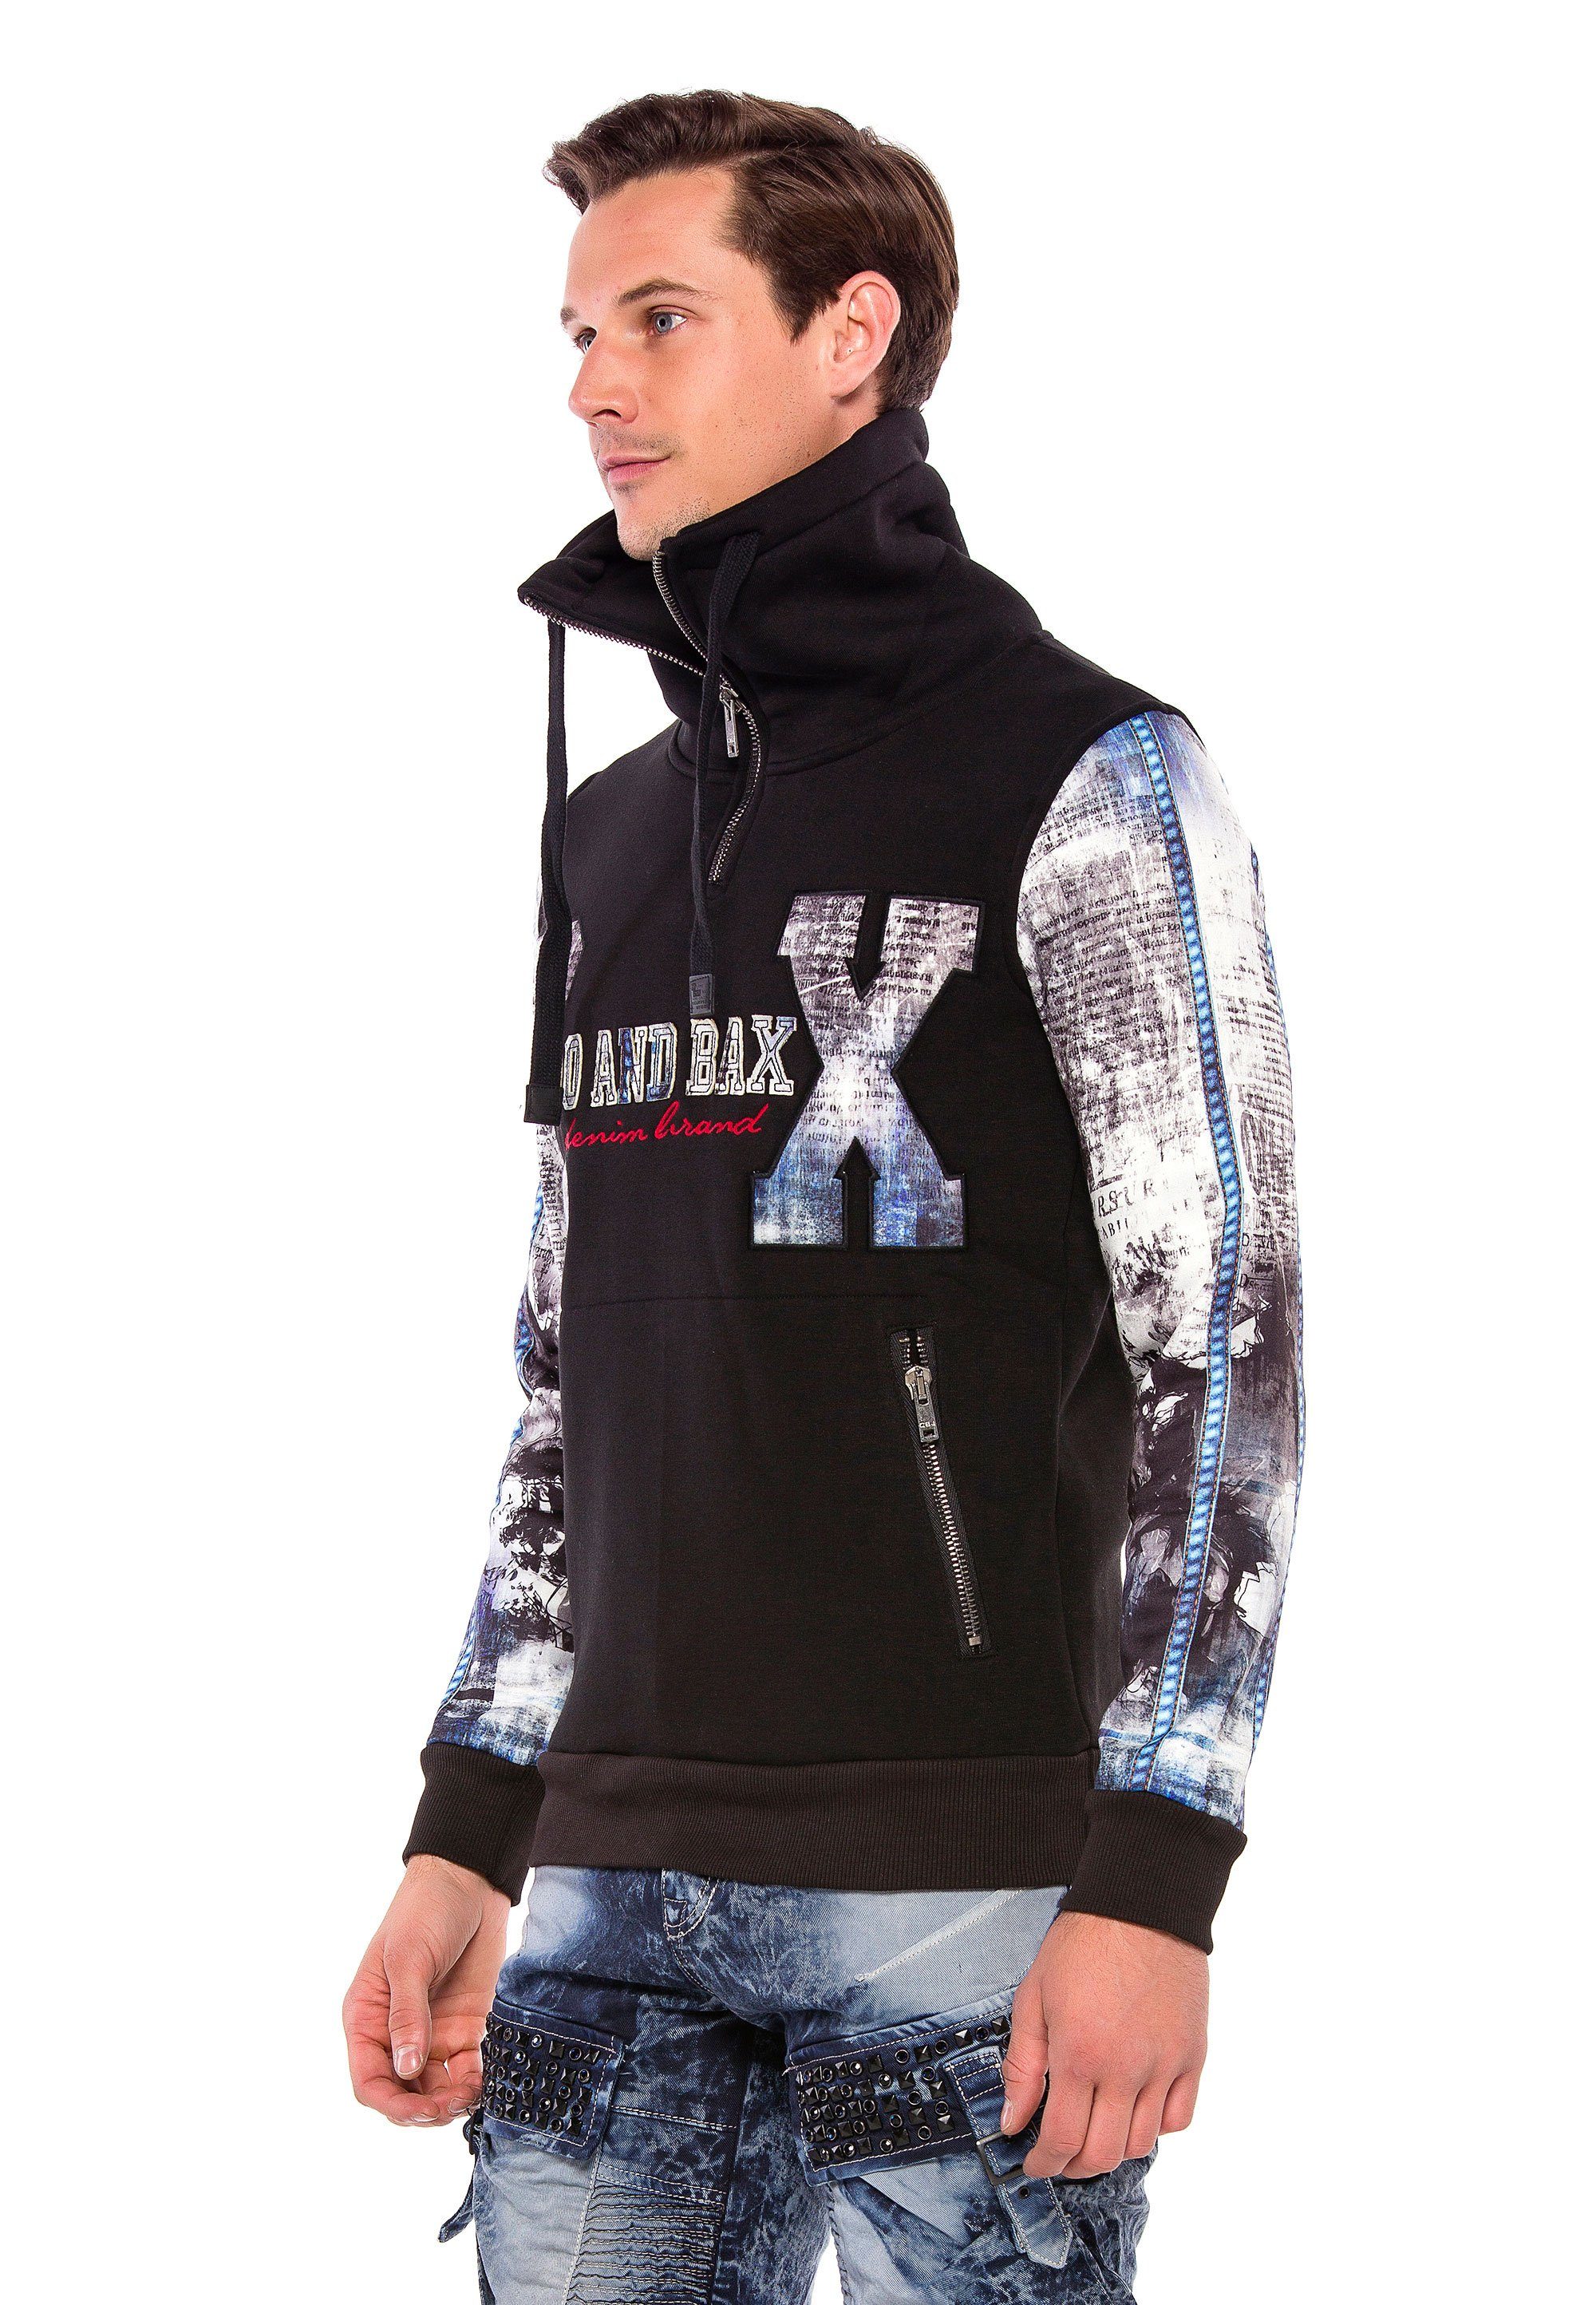 Ärmel schwarz Baxx & bedruckte Kapuzensweatshirt mit Cipo